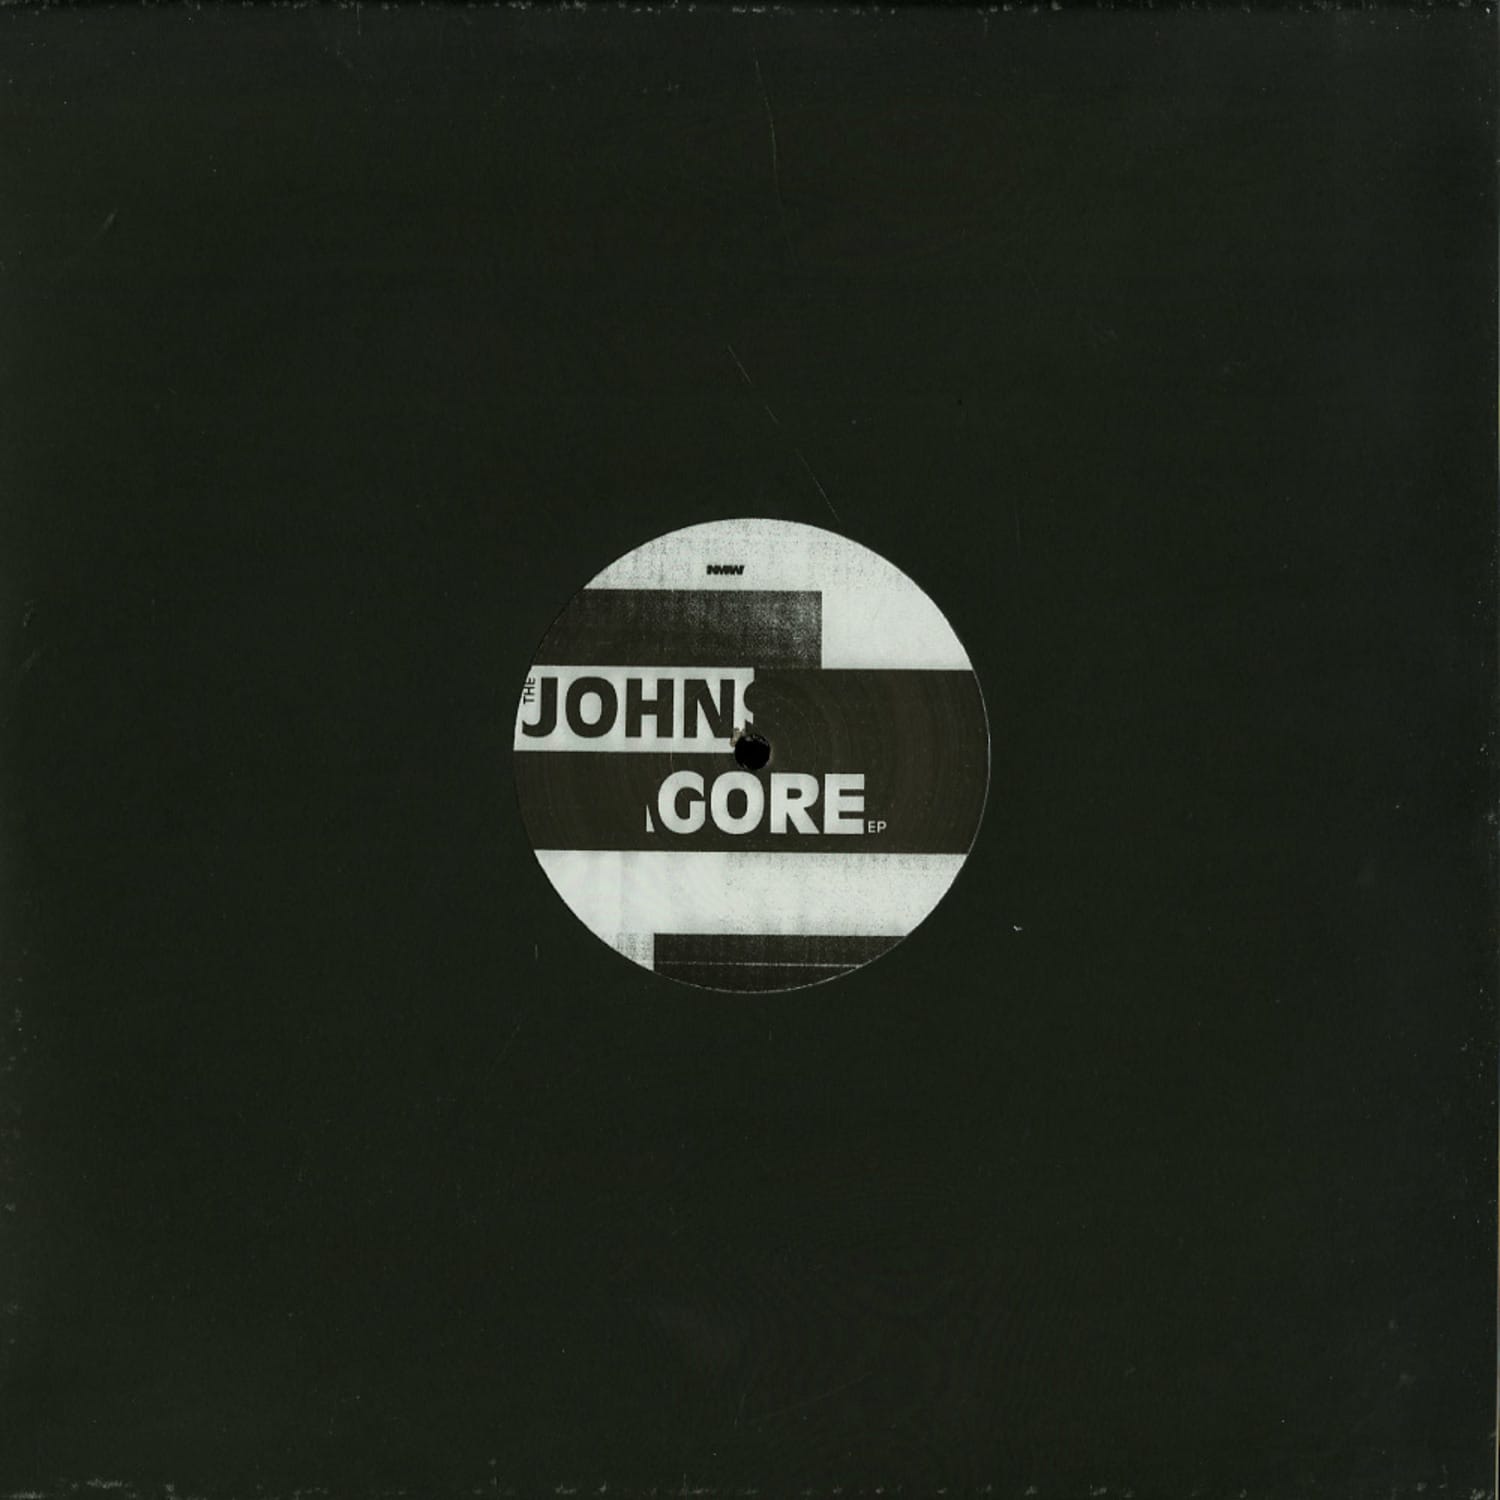 James Johnston / Alex Agore - THE JOHN GORE EP